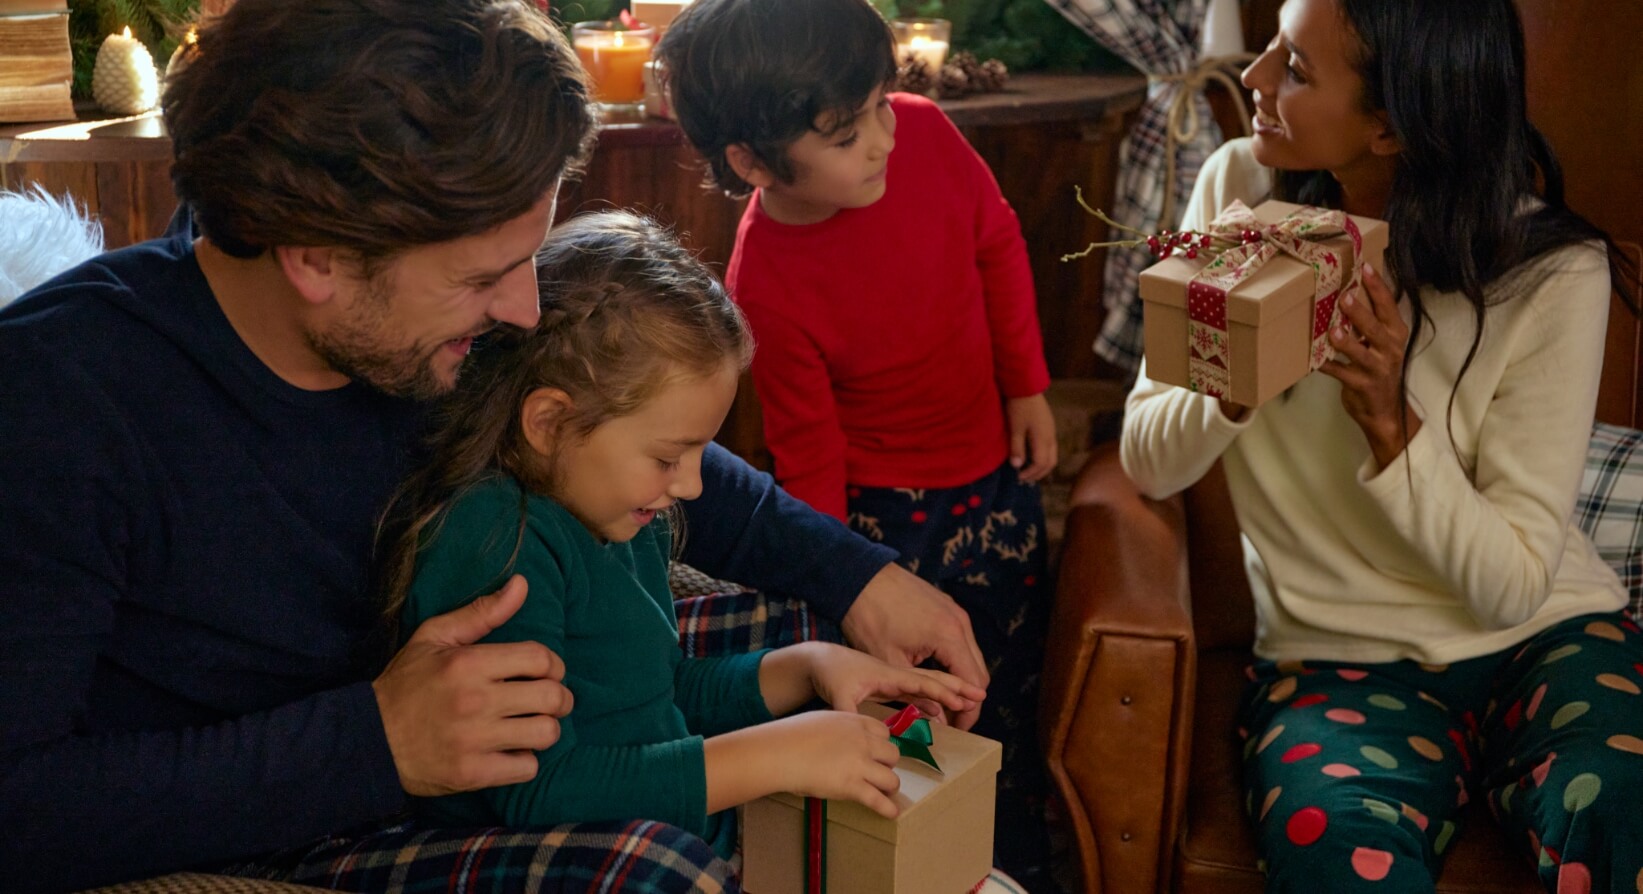 O Nosso Melhor Natal | Love & Joy - Gift Guide Natal MO